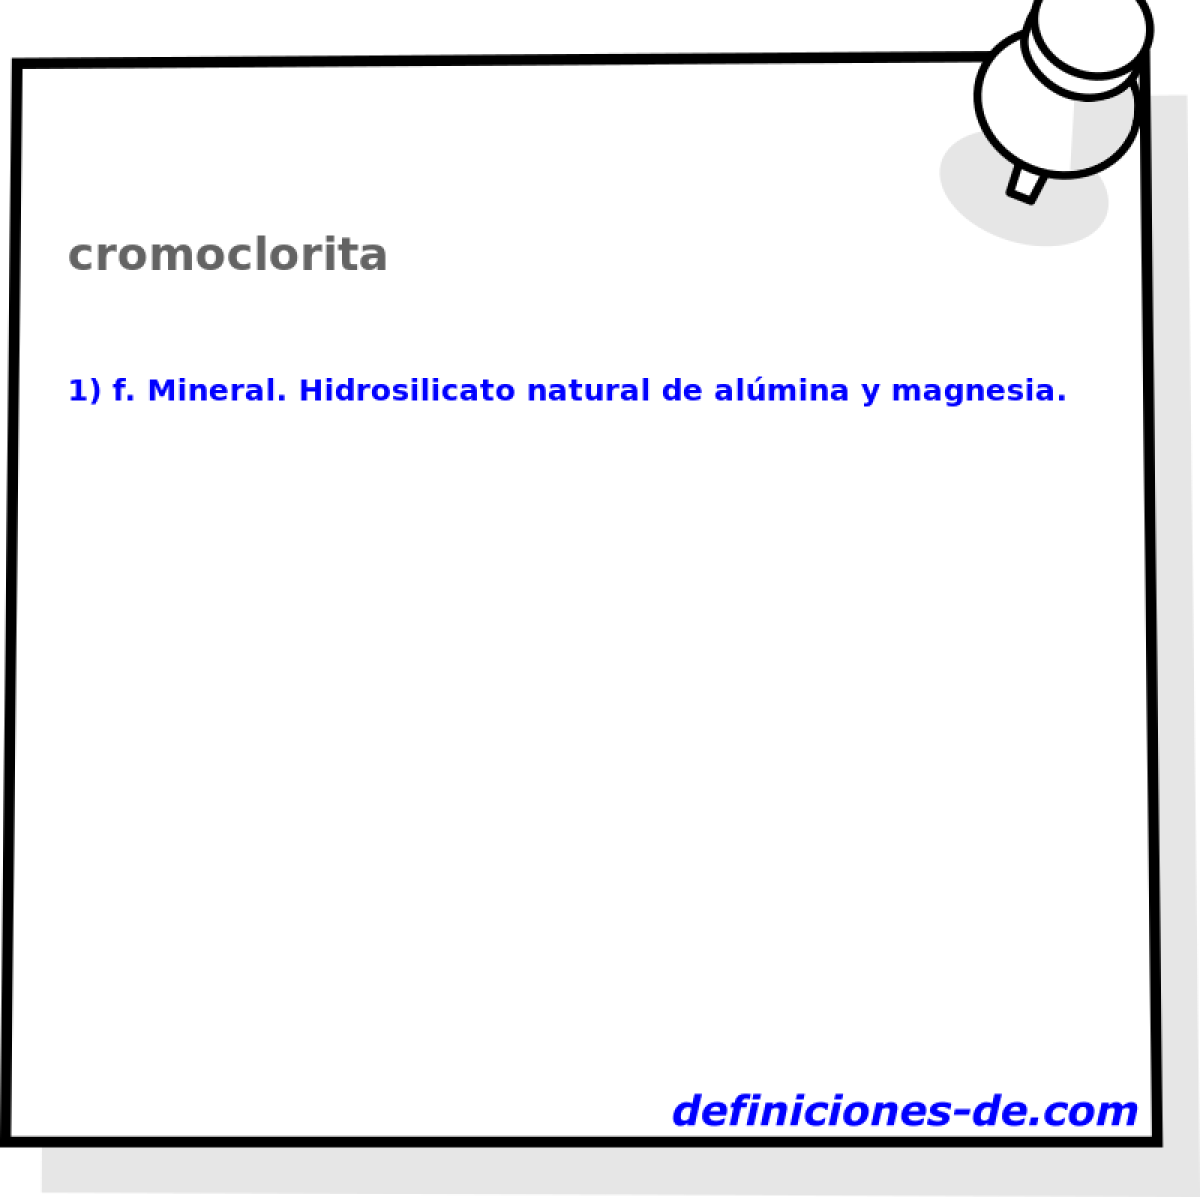 cromoclorita 